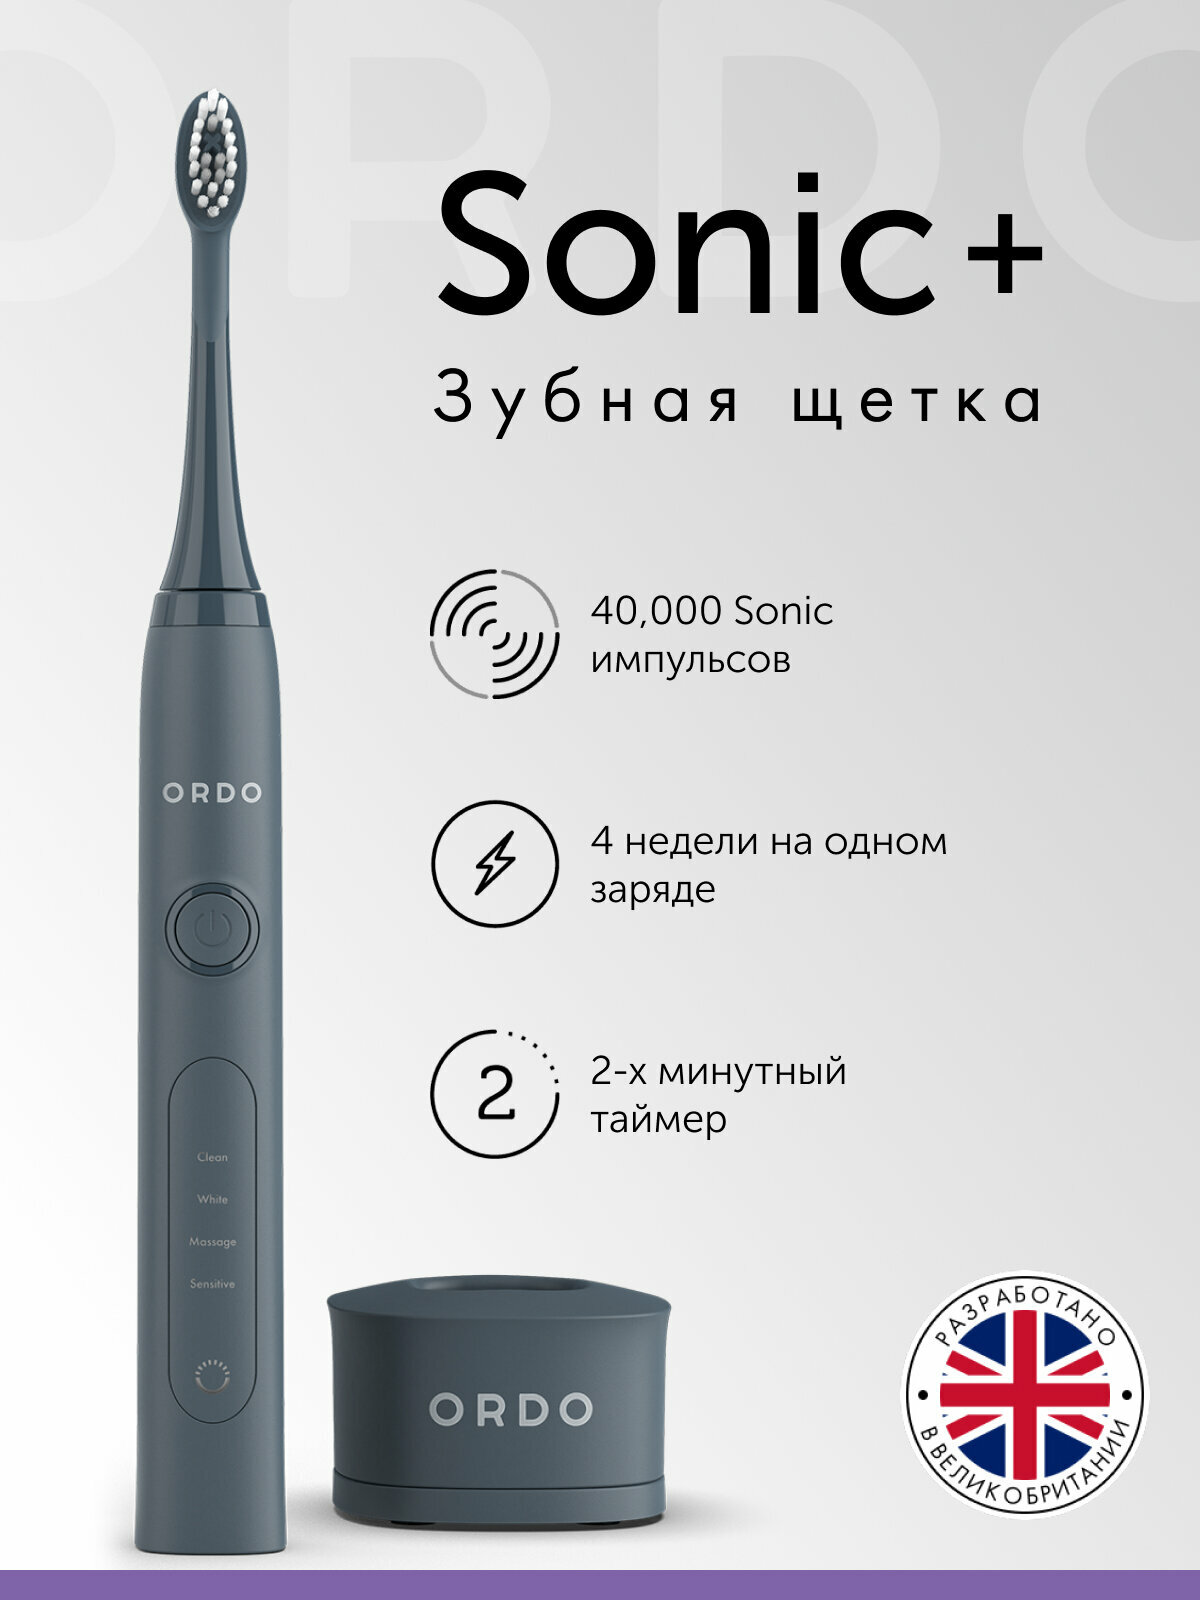 Электрическая зубная щетка ORDO Sonic+ звуковая, 4 режима чистки, таймер на 2 мин, USB зарядка, с влагозащитой, темно серая